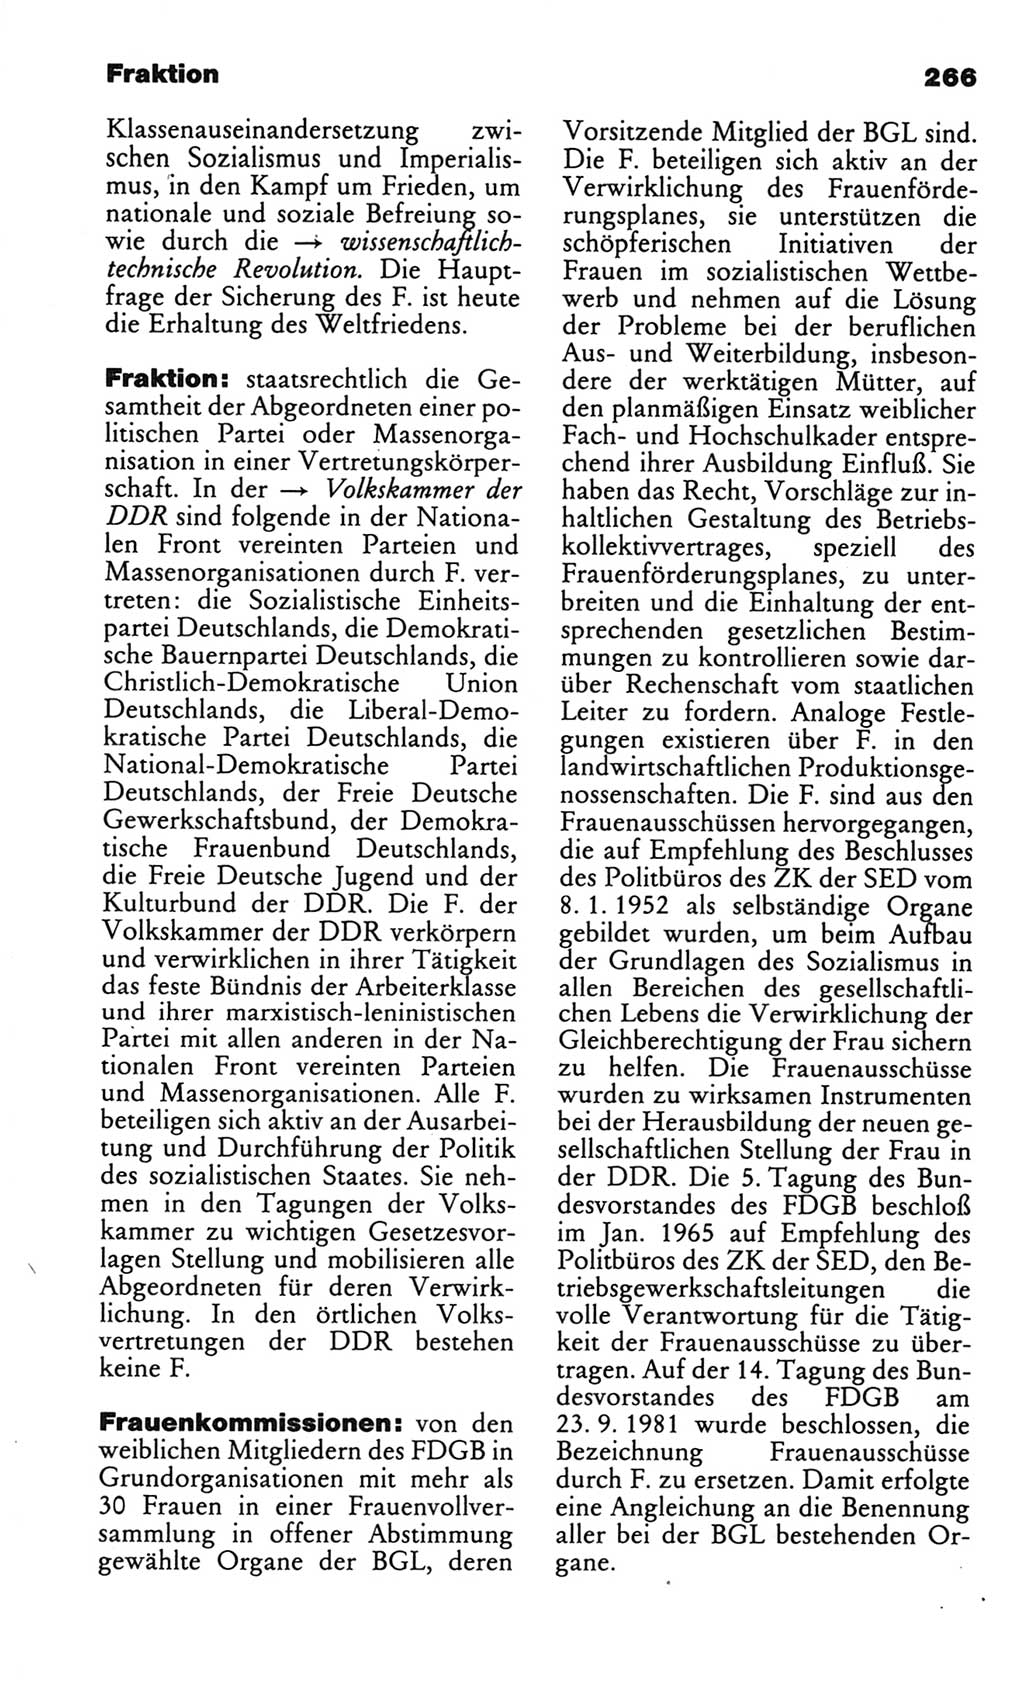 Kleines politisches Wörterbuch [Deutsche Demokratische Republik (DDR)] 1986, Seite 266 (Kl. pol. Wb. DDR 1986, S. 266)